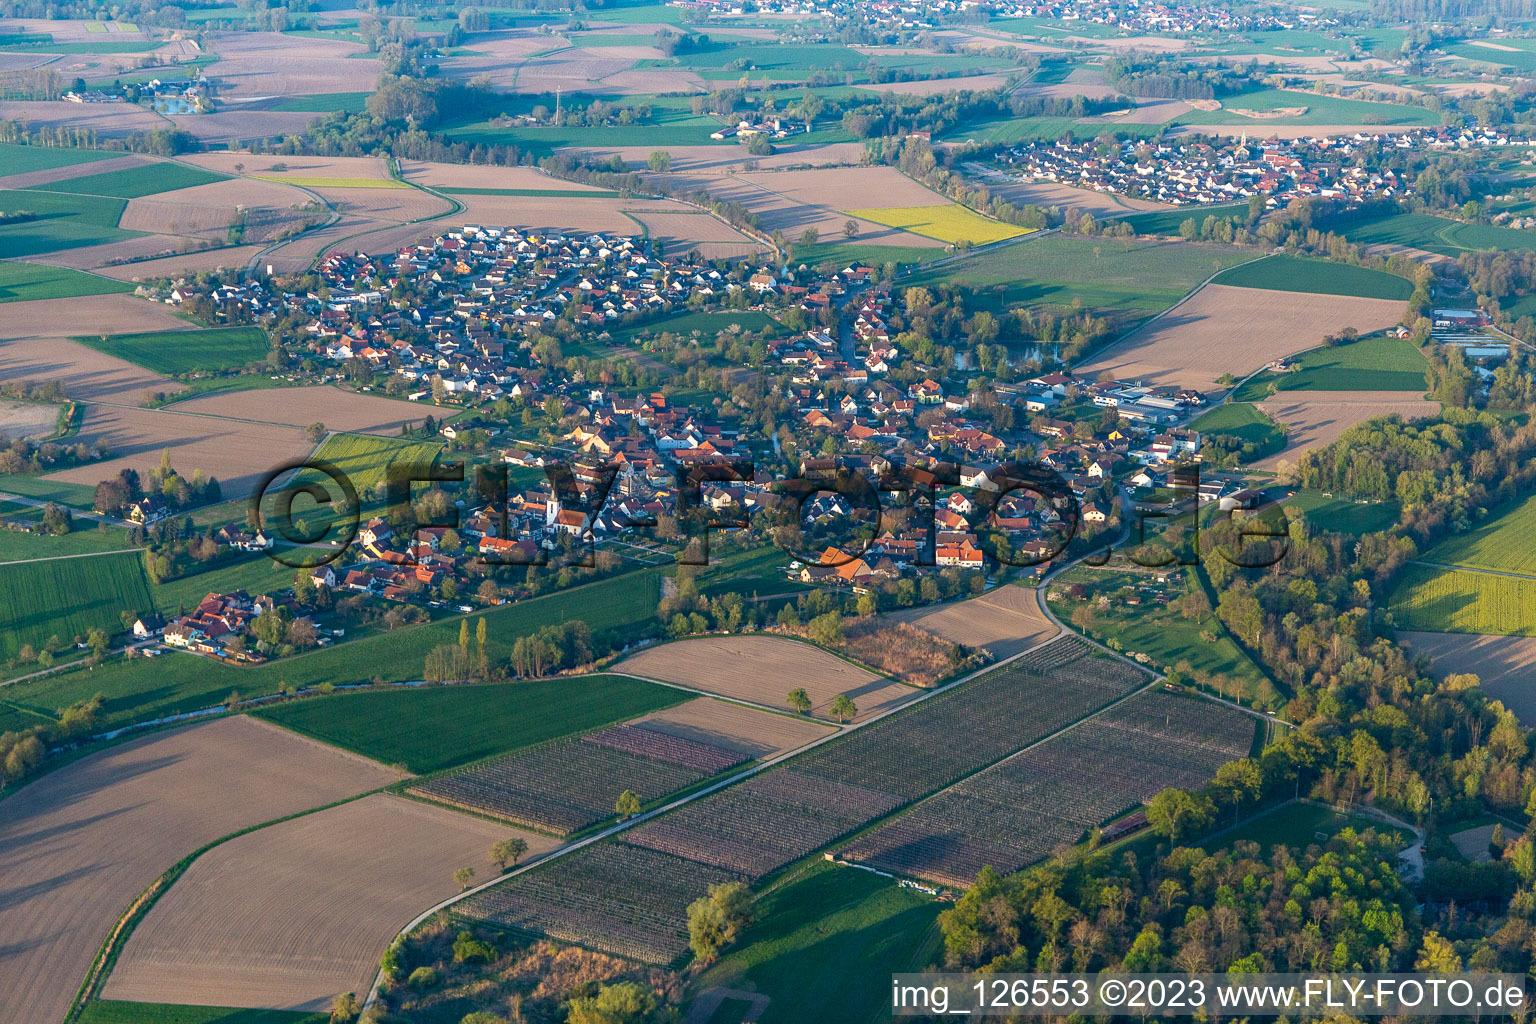 Aerial view of District Diersheim in Rheinau in the state Baden-Wuerttemberg, Germany